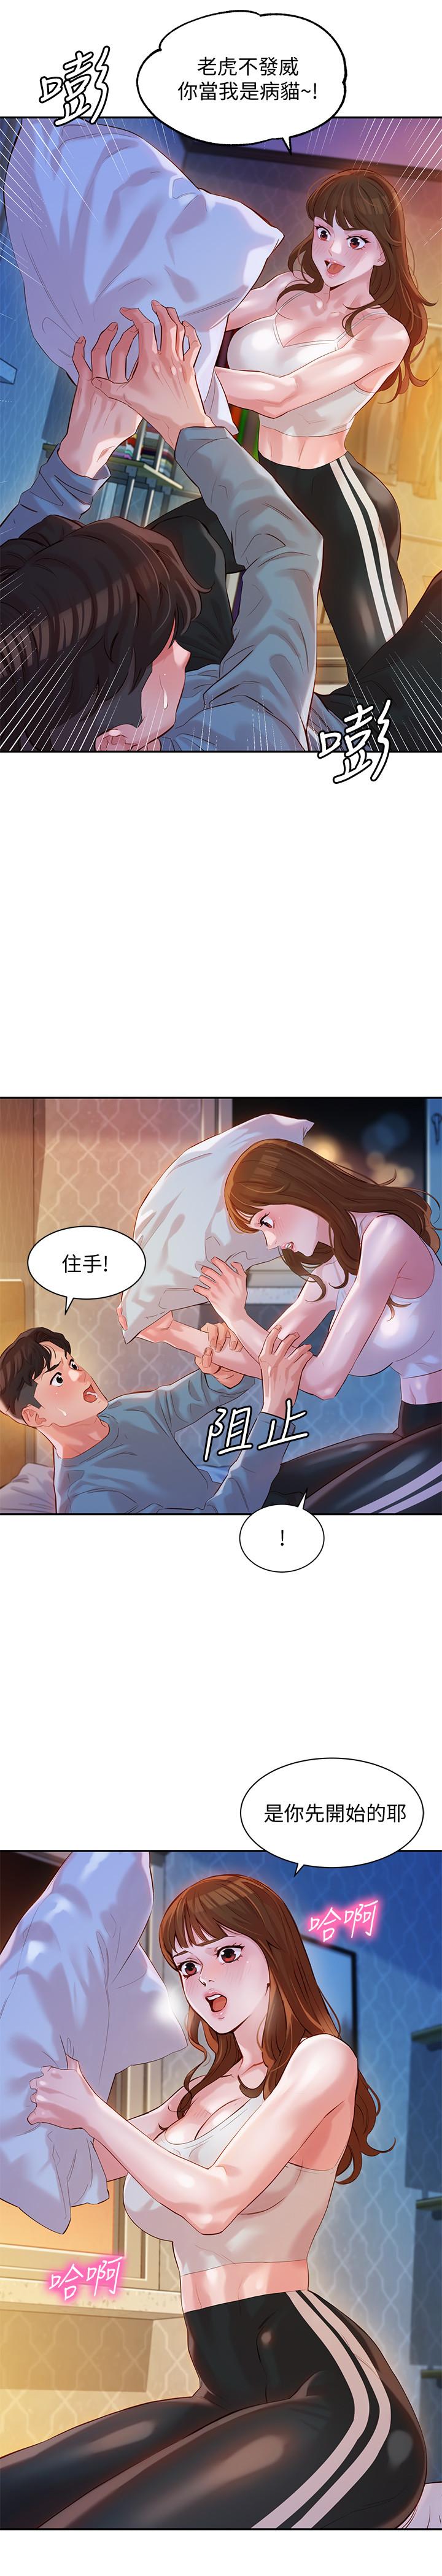 韩国污漫画 女神寫真 第14话-在两人之间流动的微妙情感 23